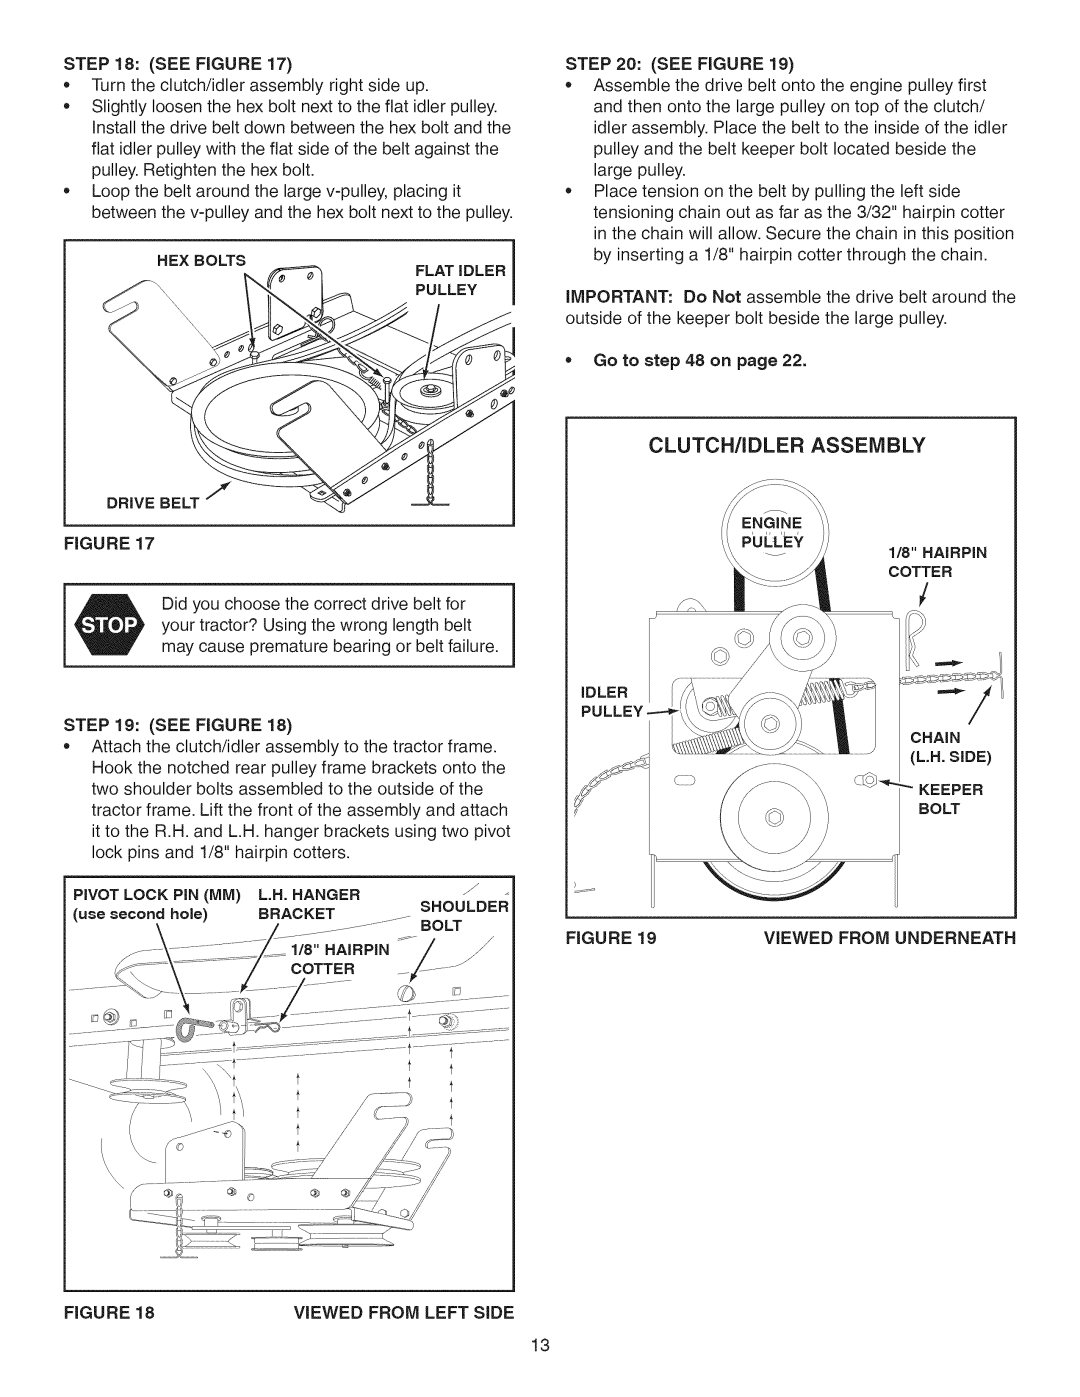 Craftsman 486.24837 manual Clutch/Idler Assembly, Shoulder, Bolt 